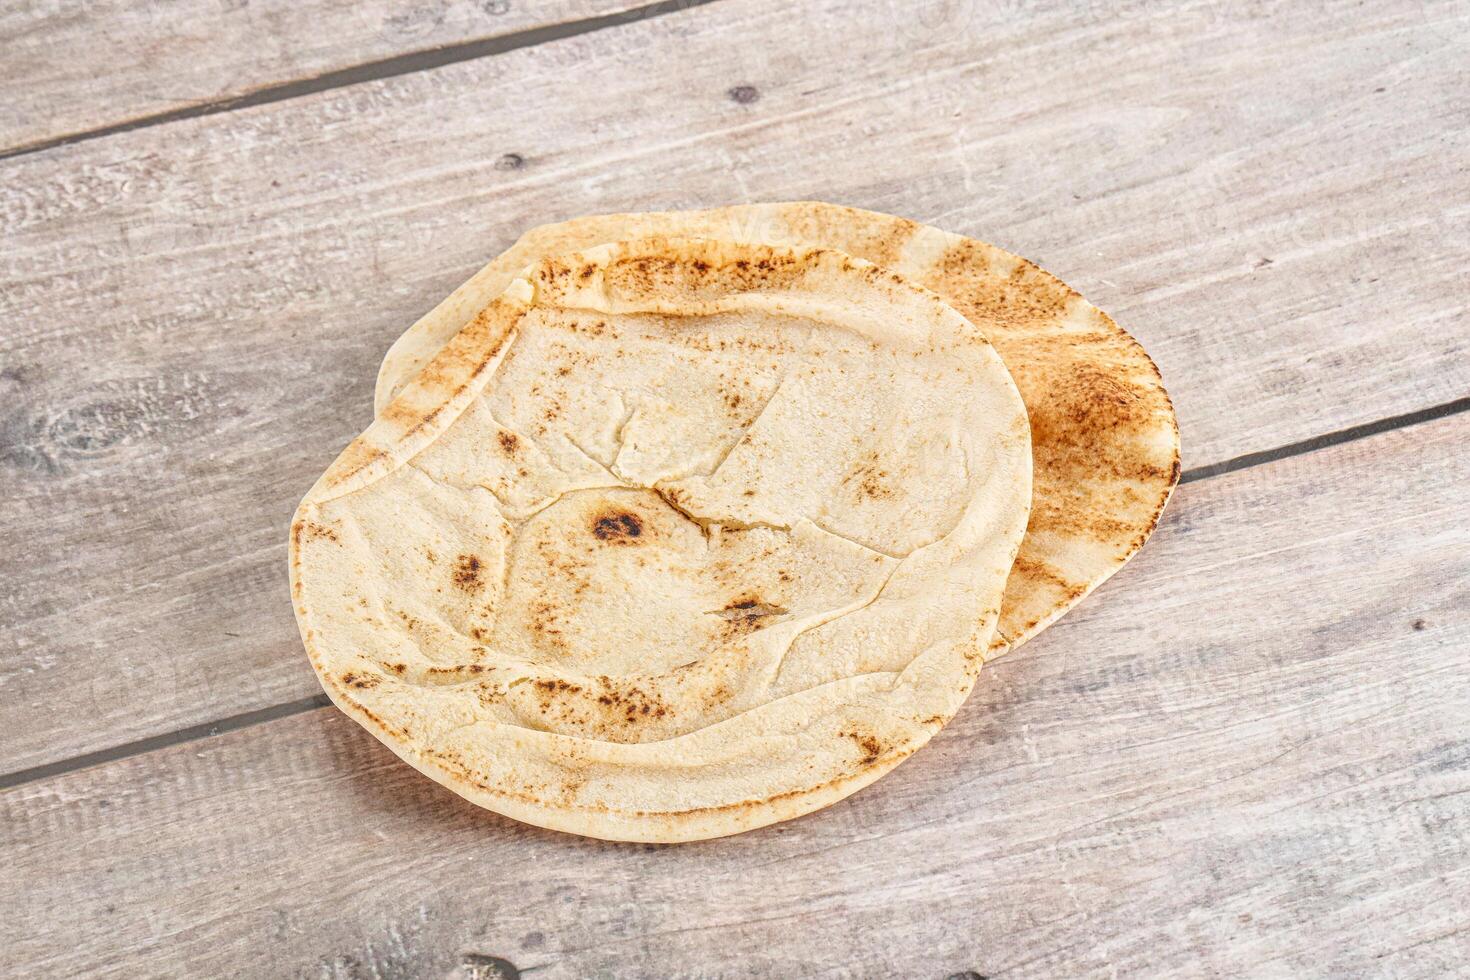 traditioneel oostelijk ronde pita brood foto